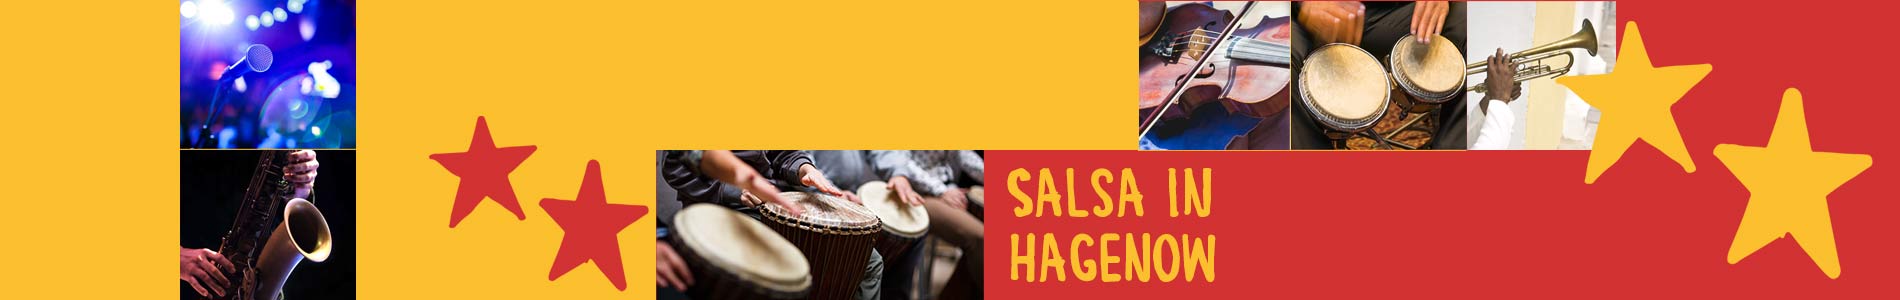 Salsa in Hagenow – Salsa lernen und tanzen, Tanzkurse, Partys, Veranstaltungen